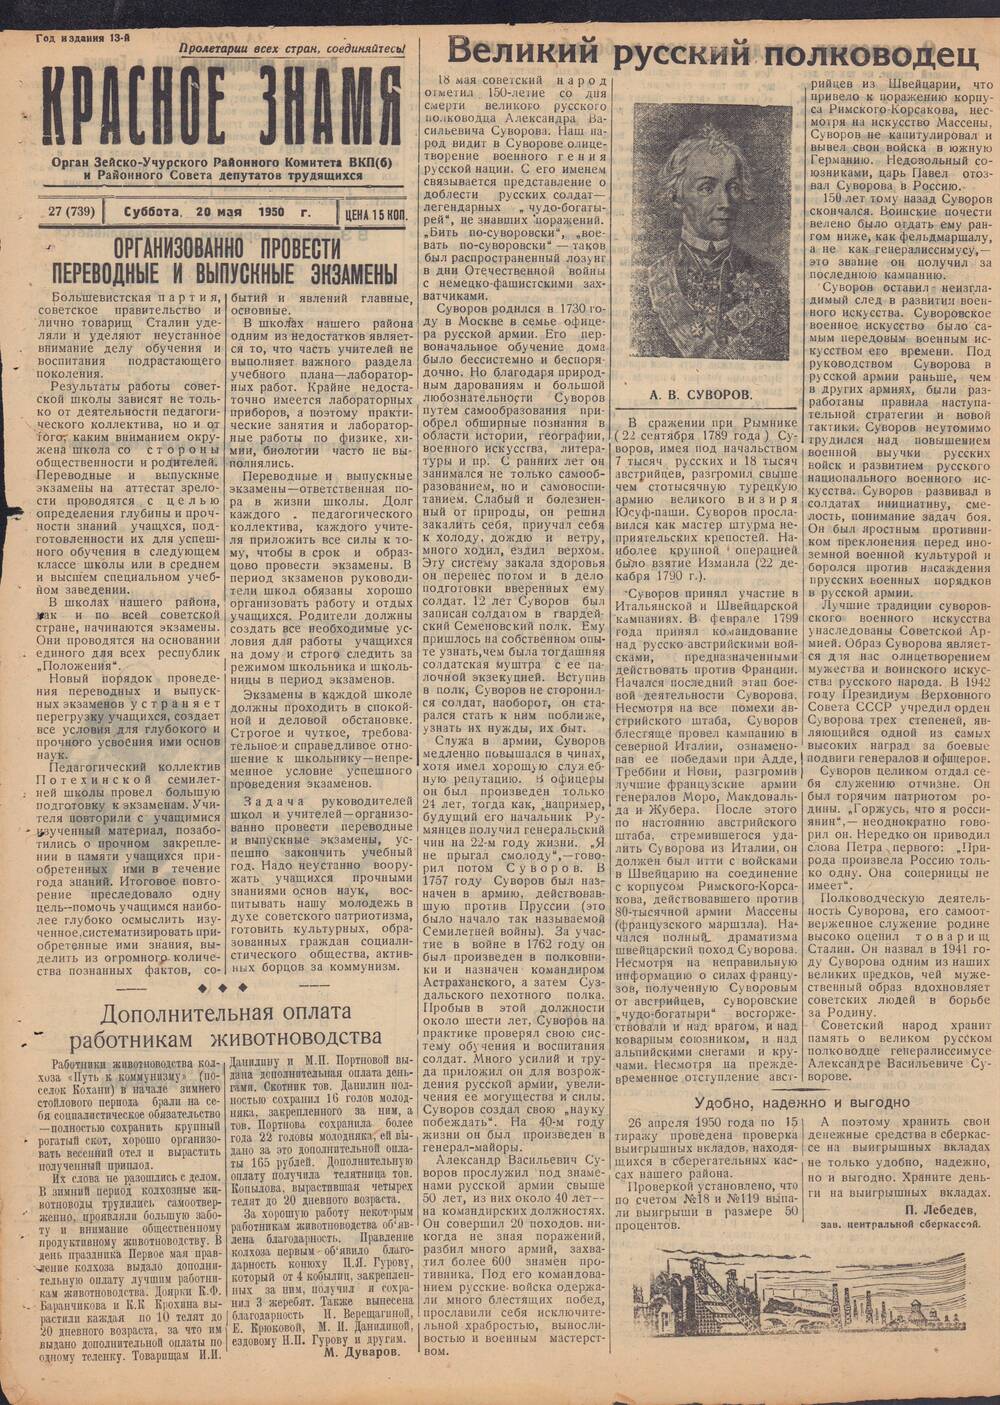 Газета Красное знамя №27 (739) от 20 мая 1950 года.